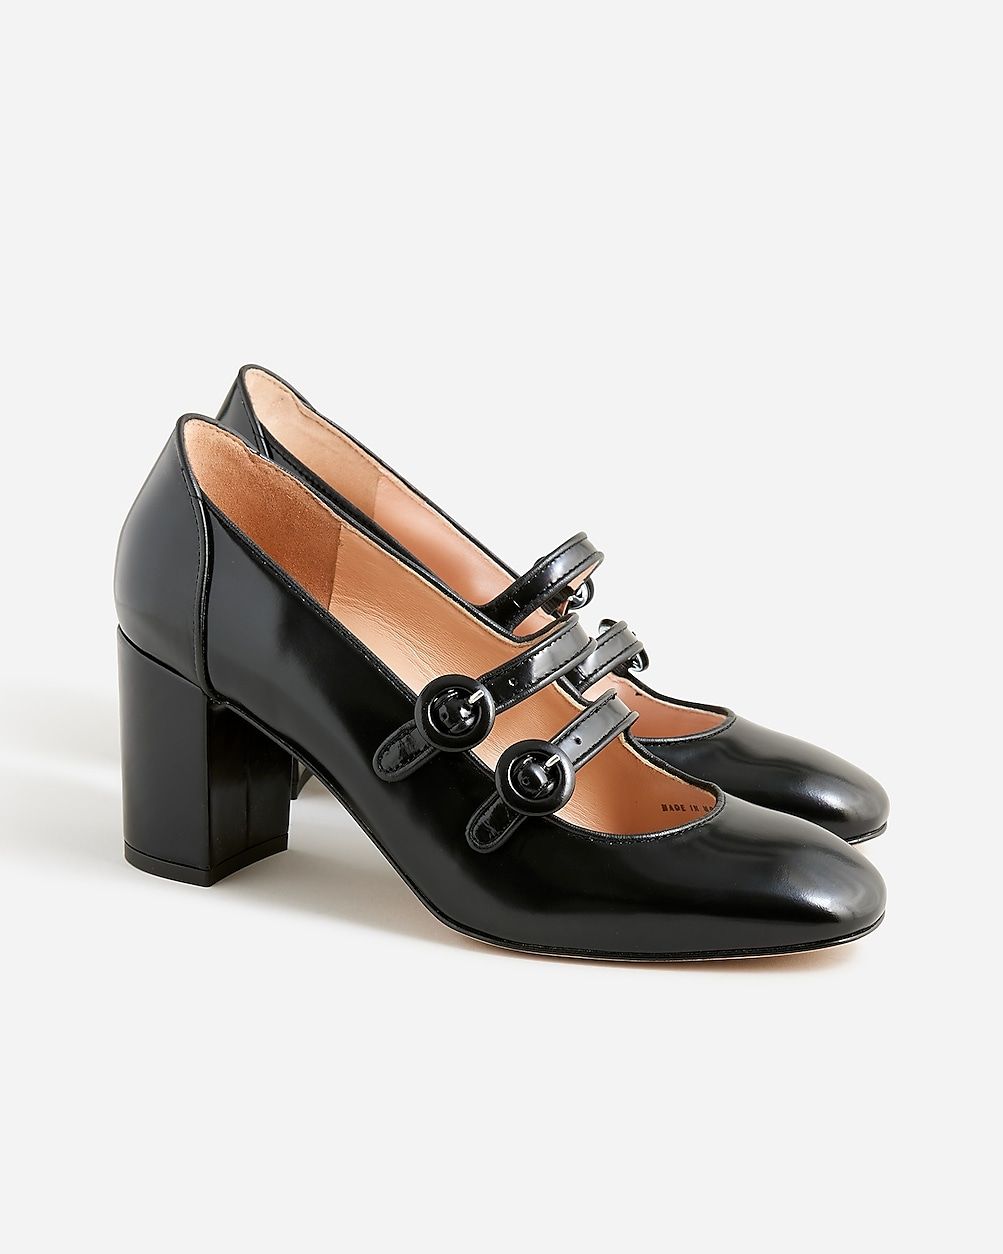 Maisie double-strap heels in Italian spazzolato leather | J.Crew US